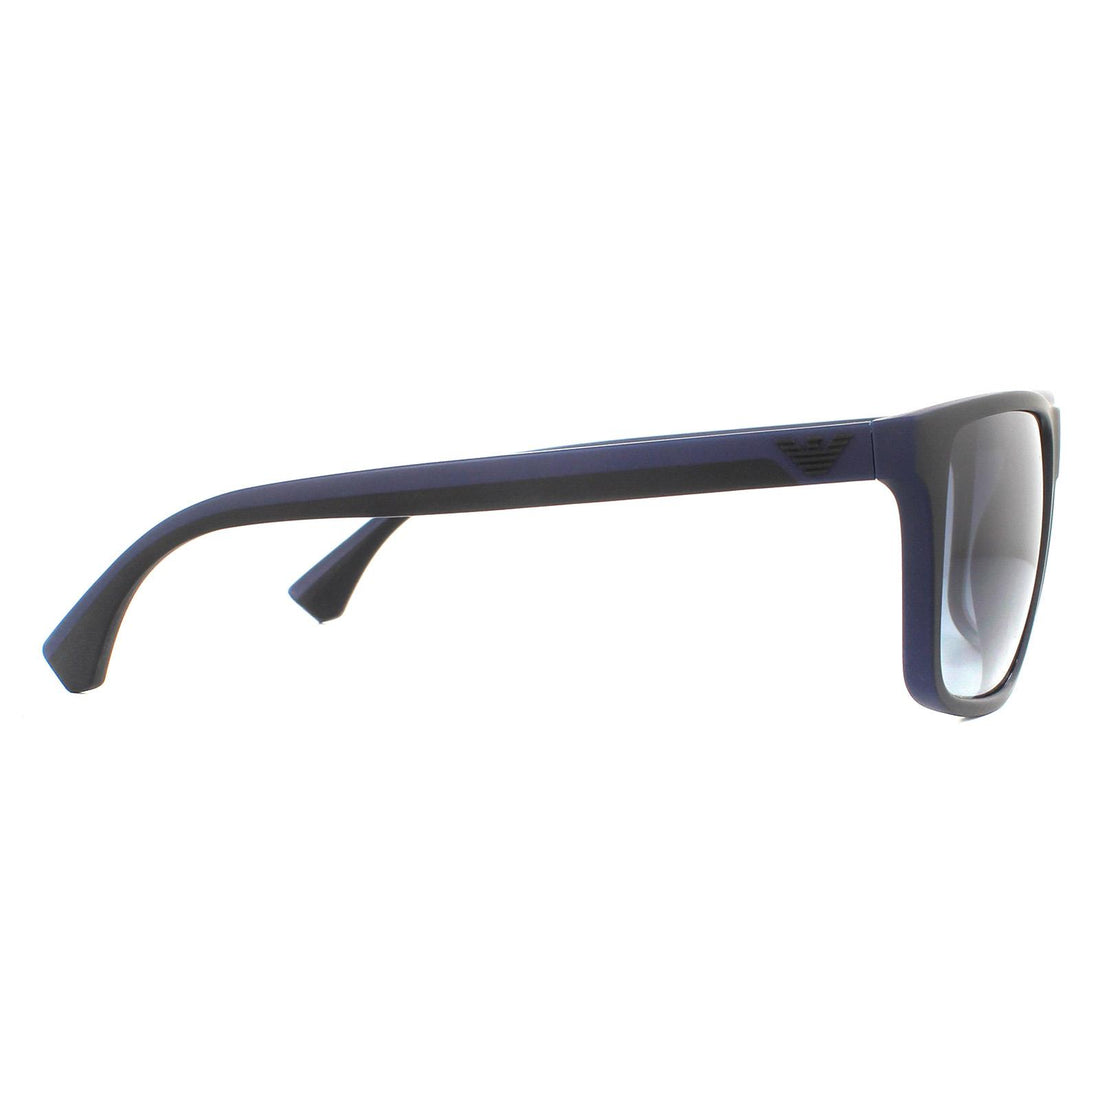 Emporio Armani Sunglasses EA4033 58644L Black and Rubber Blue Blue Gradient